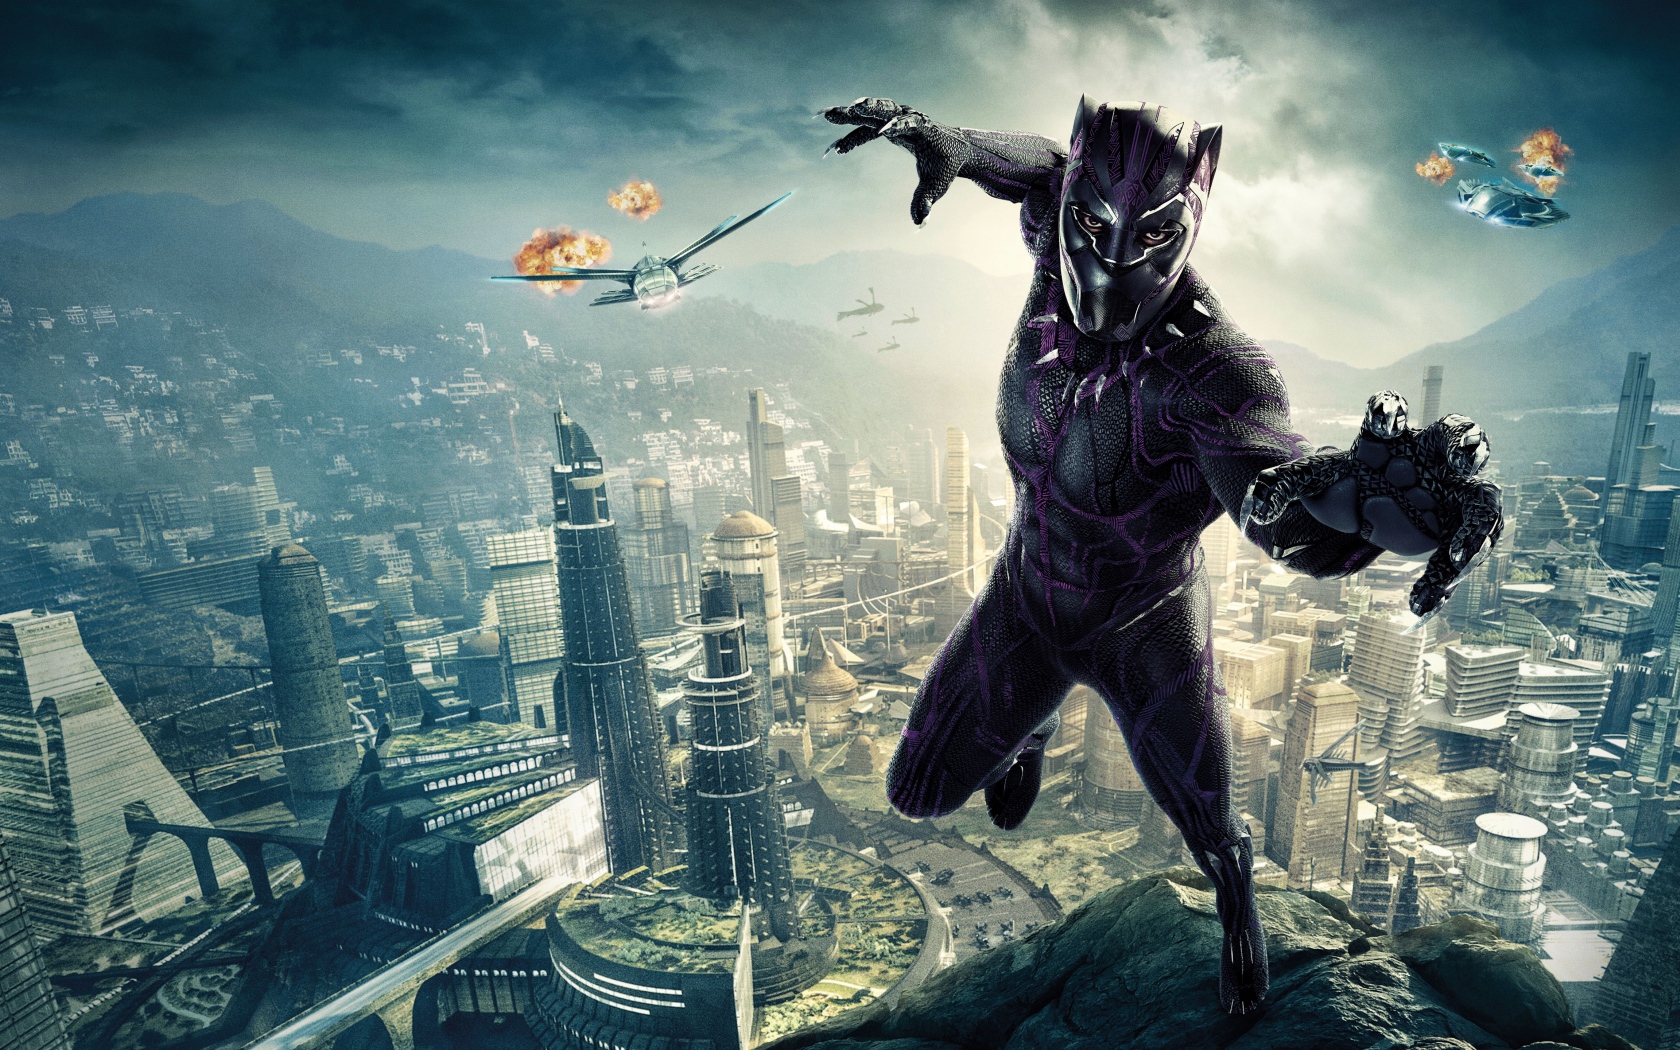 Superhero film Black Panther, 2018